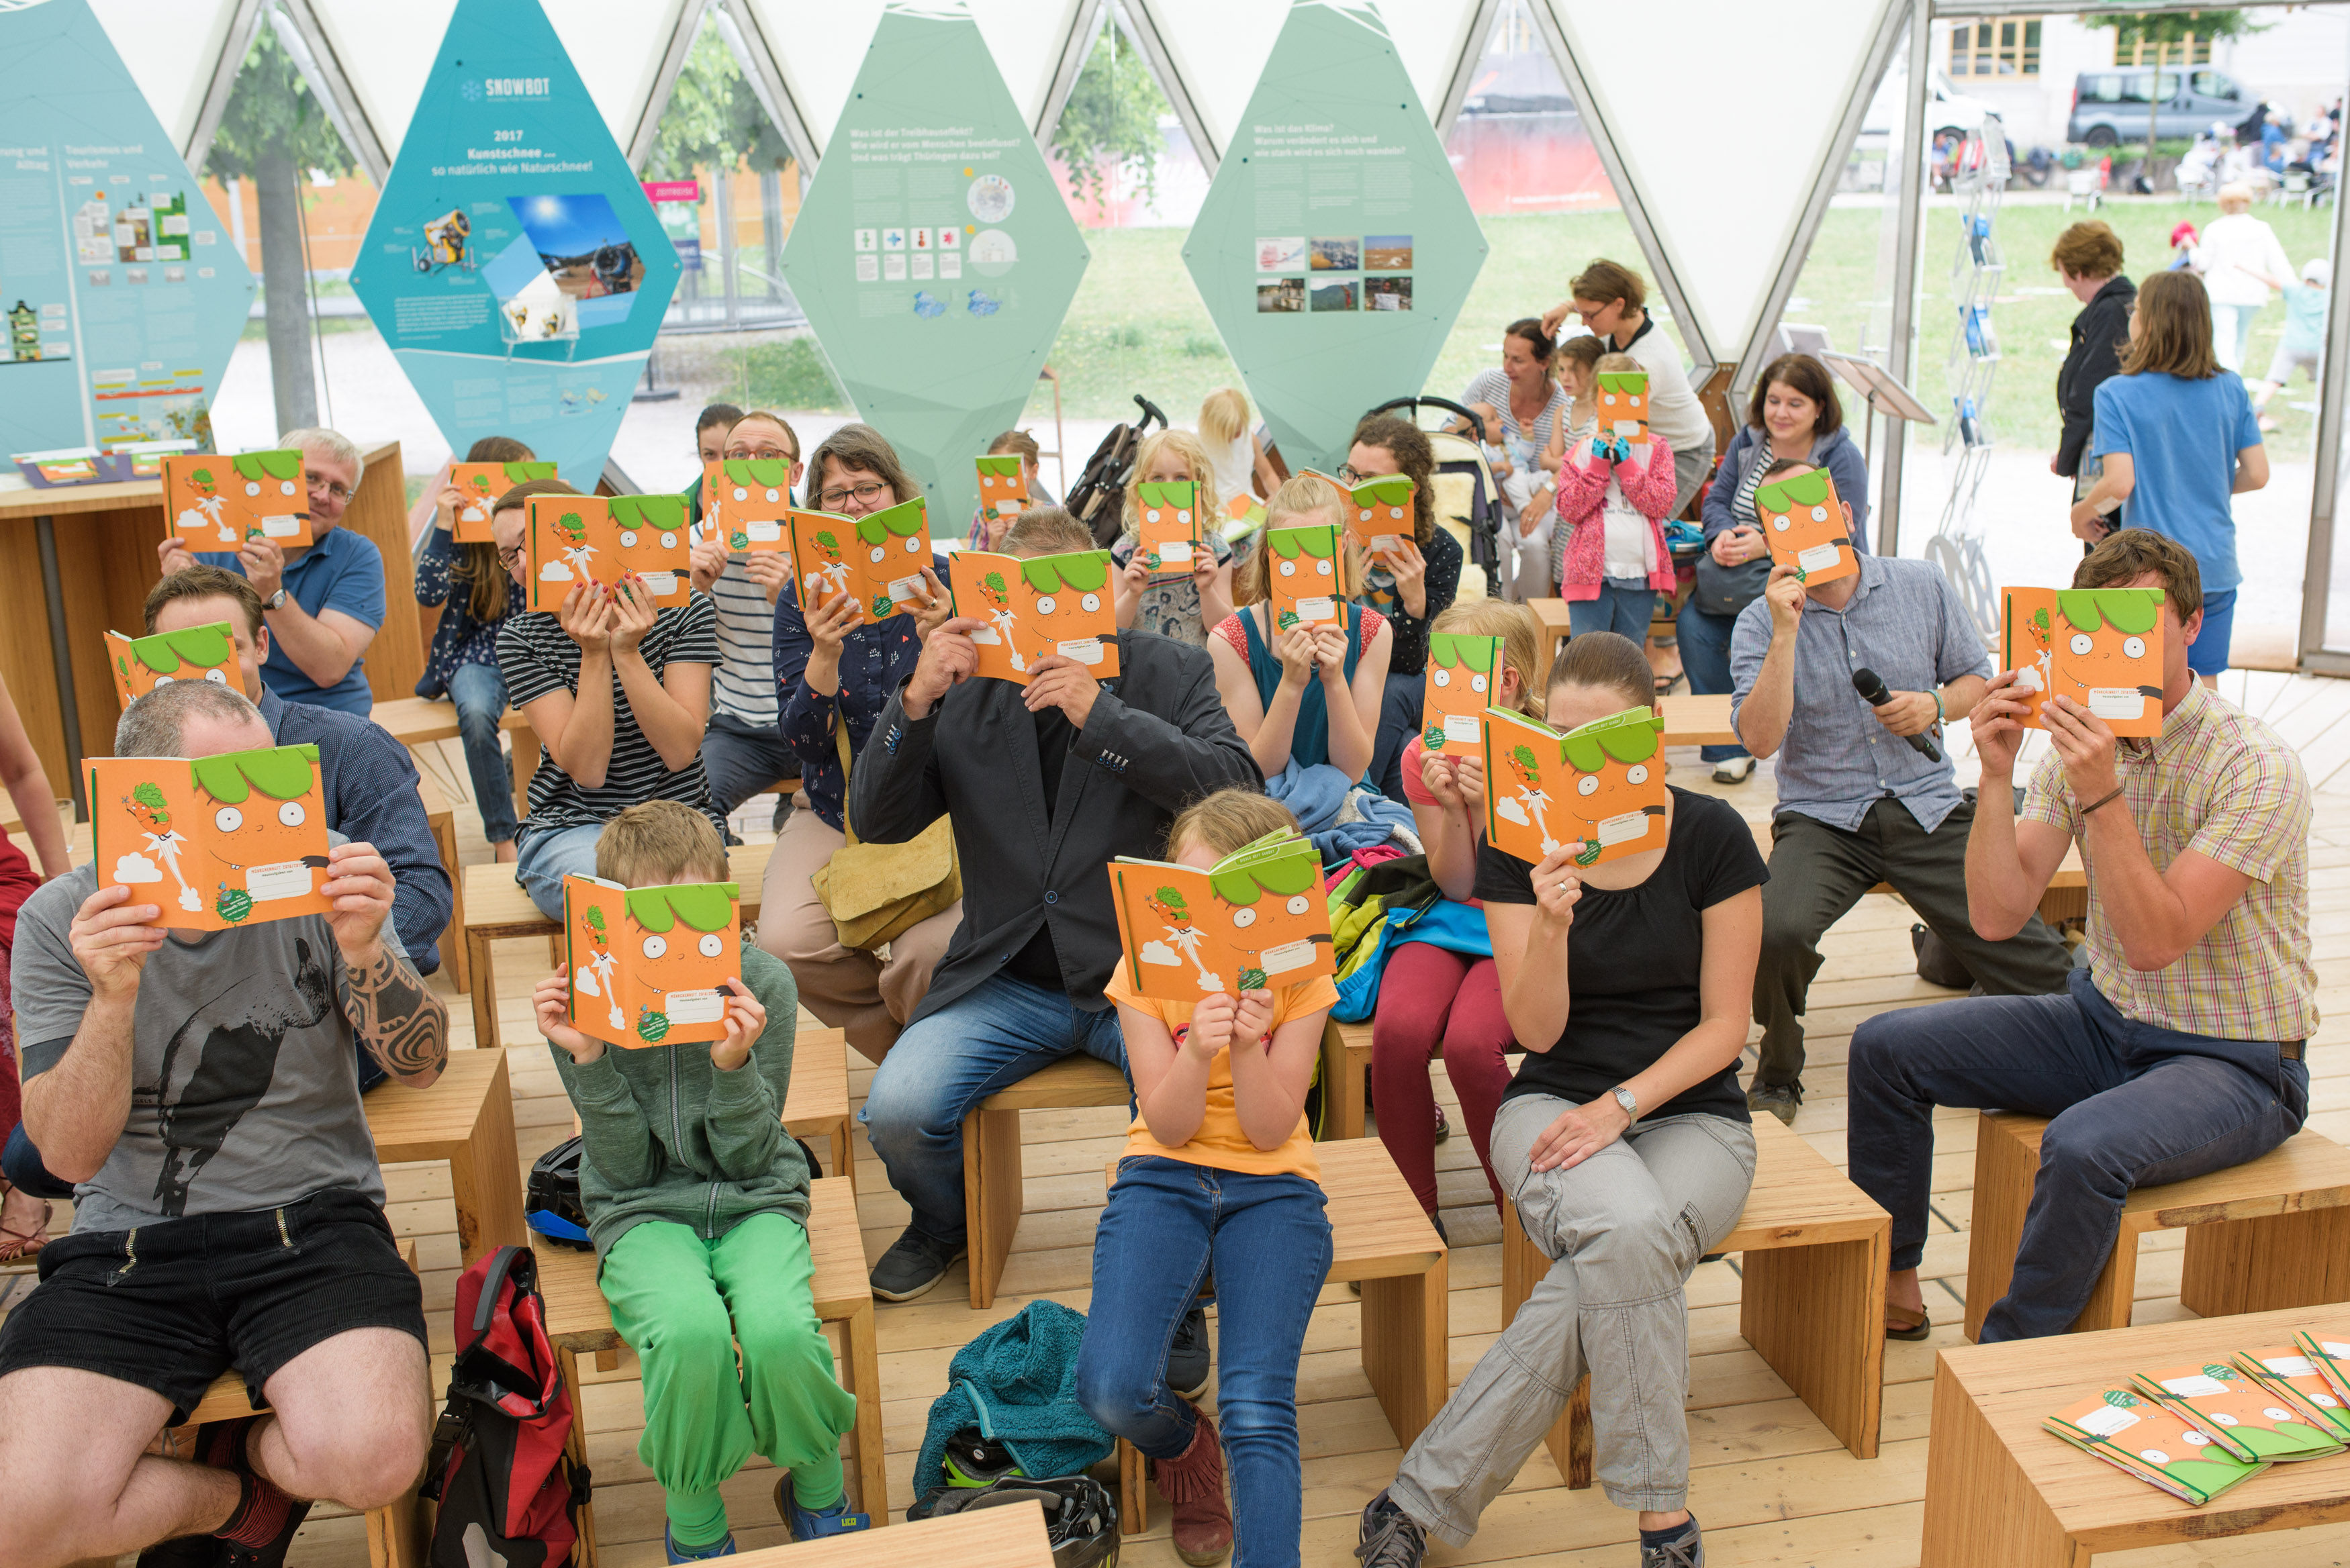 Erwachsene und Kinder sitzen im Klimapavillon und halten aufgeschlagene Möhrchenhefte vor ihre Gesichter